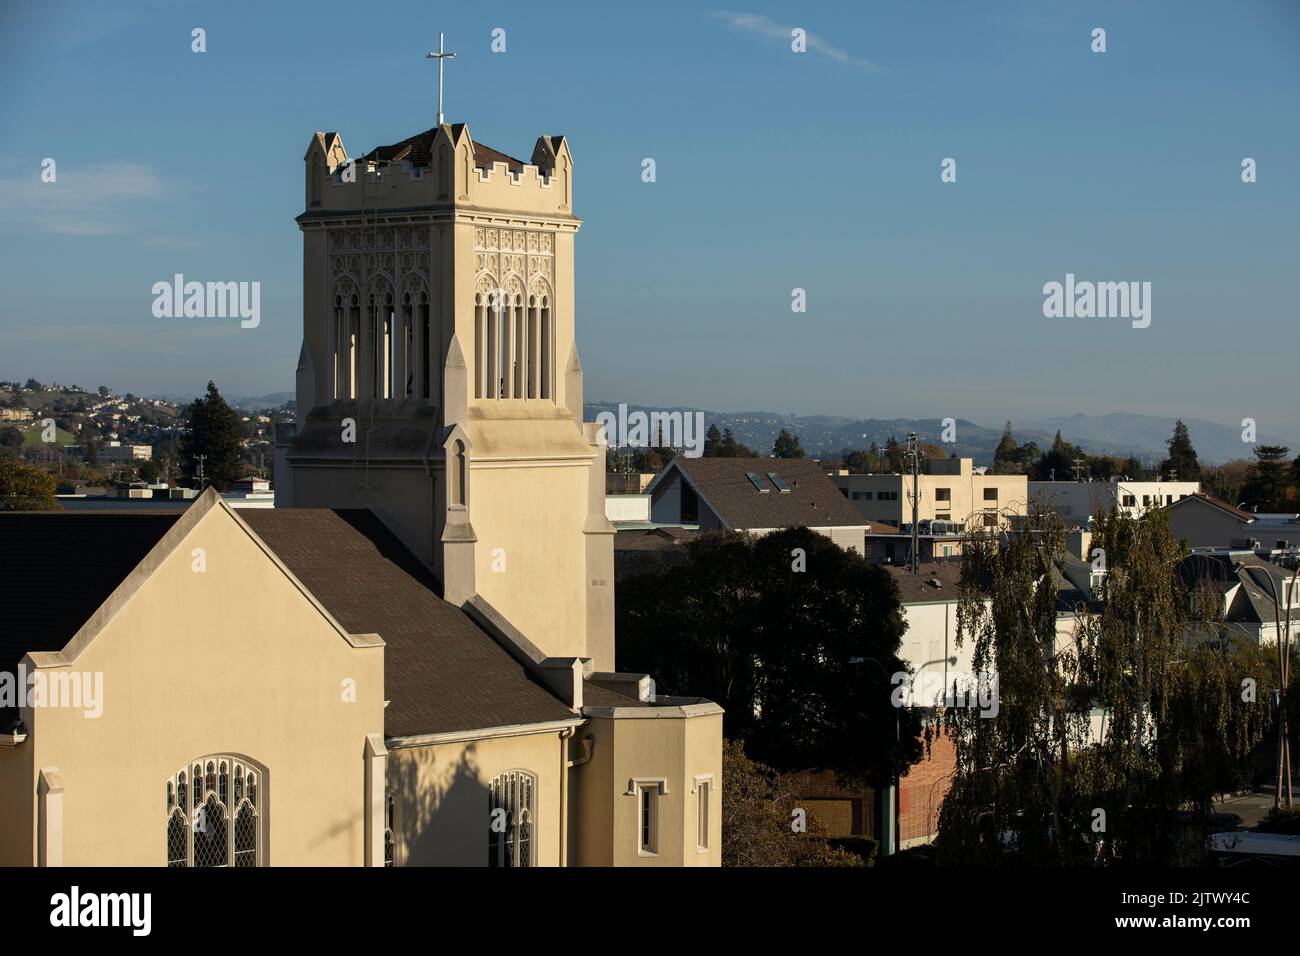 Blick am späten Nachmittag auf die historische Innenstadt von San Leandro, Kalifornien, USA. Stockfoto